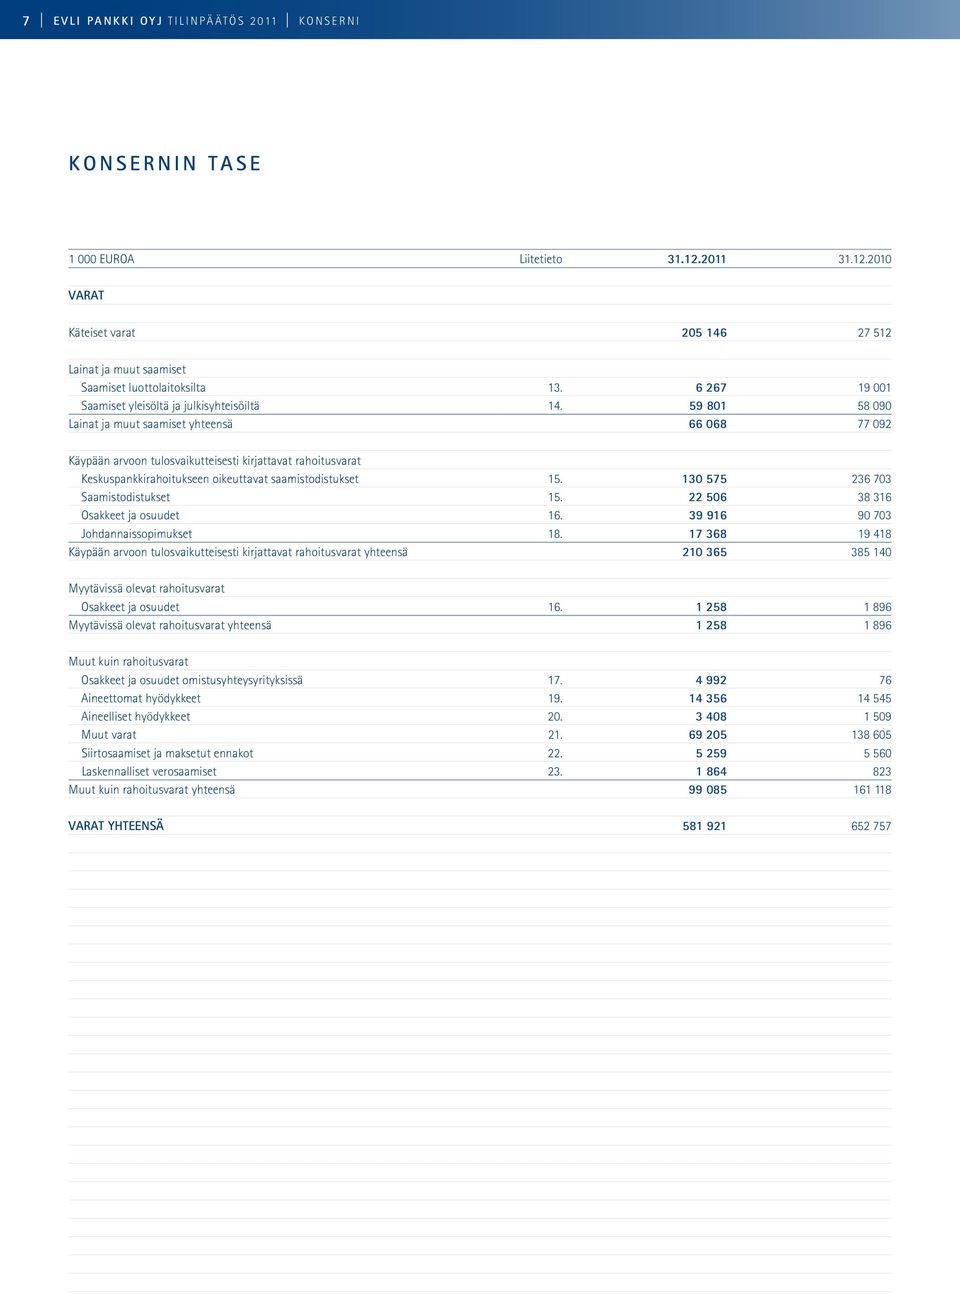 59 801 58 090 Lainat ja muut saamiset yhteensä 66 068 77 092 Käypään arvoon tulosvaikutteisesti kirjattavat rahoitusvarat Keskuspankkirahoitukseen oikeuttavat saamistodistukset 15.